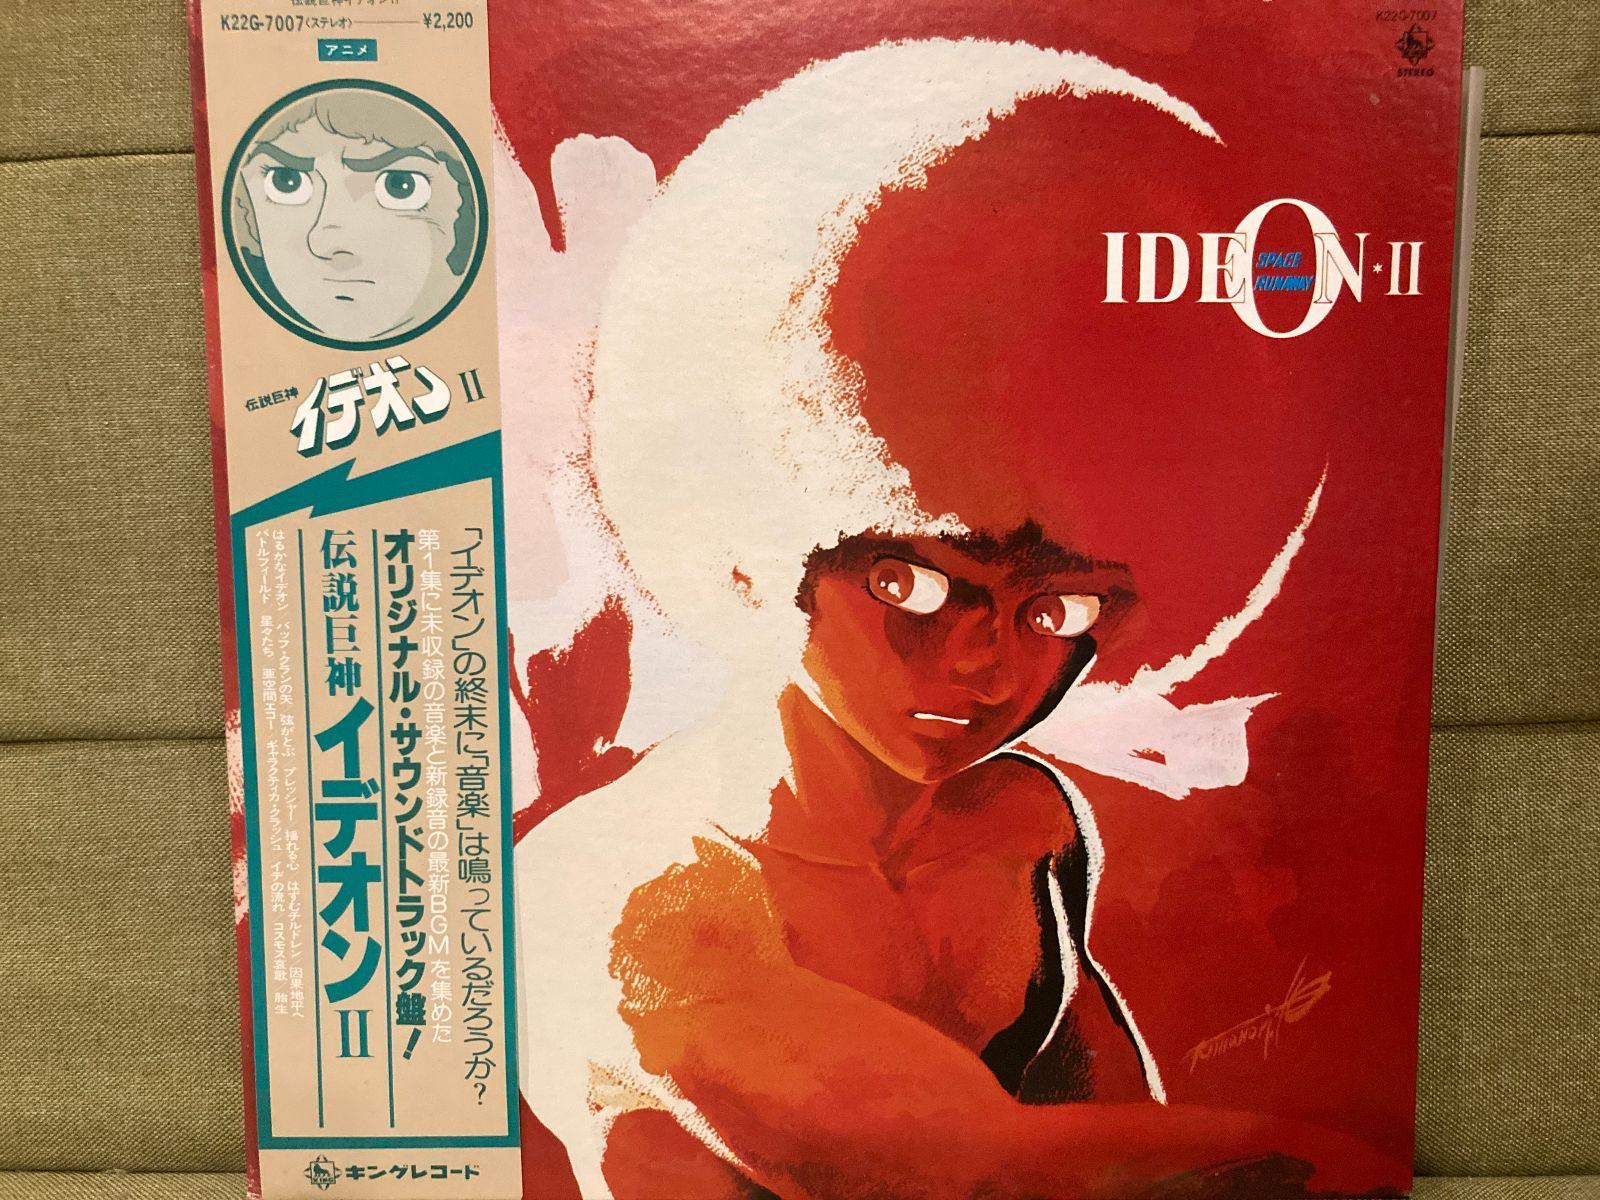 伝説巨神イデオンⅡ オリジナルサウンドトラック レコード LP - メルカリ